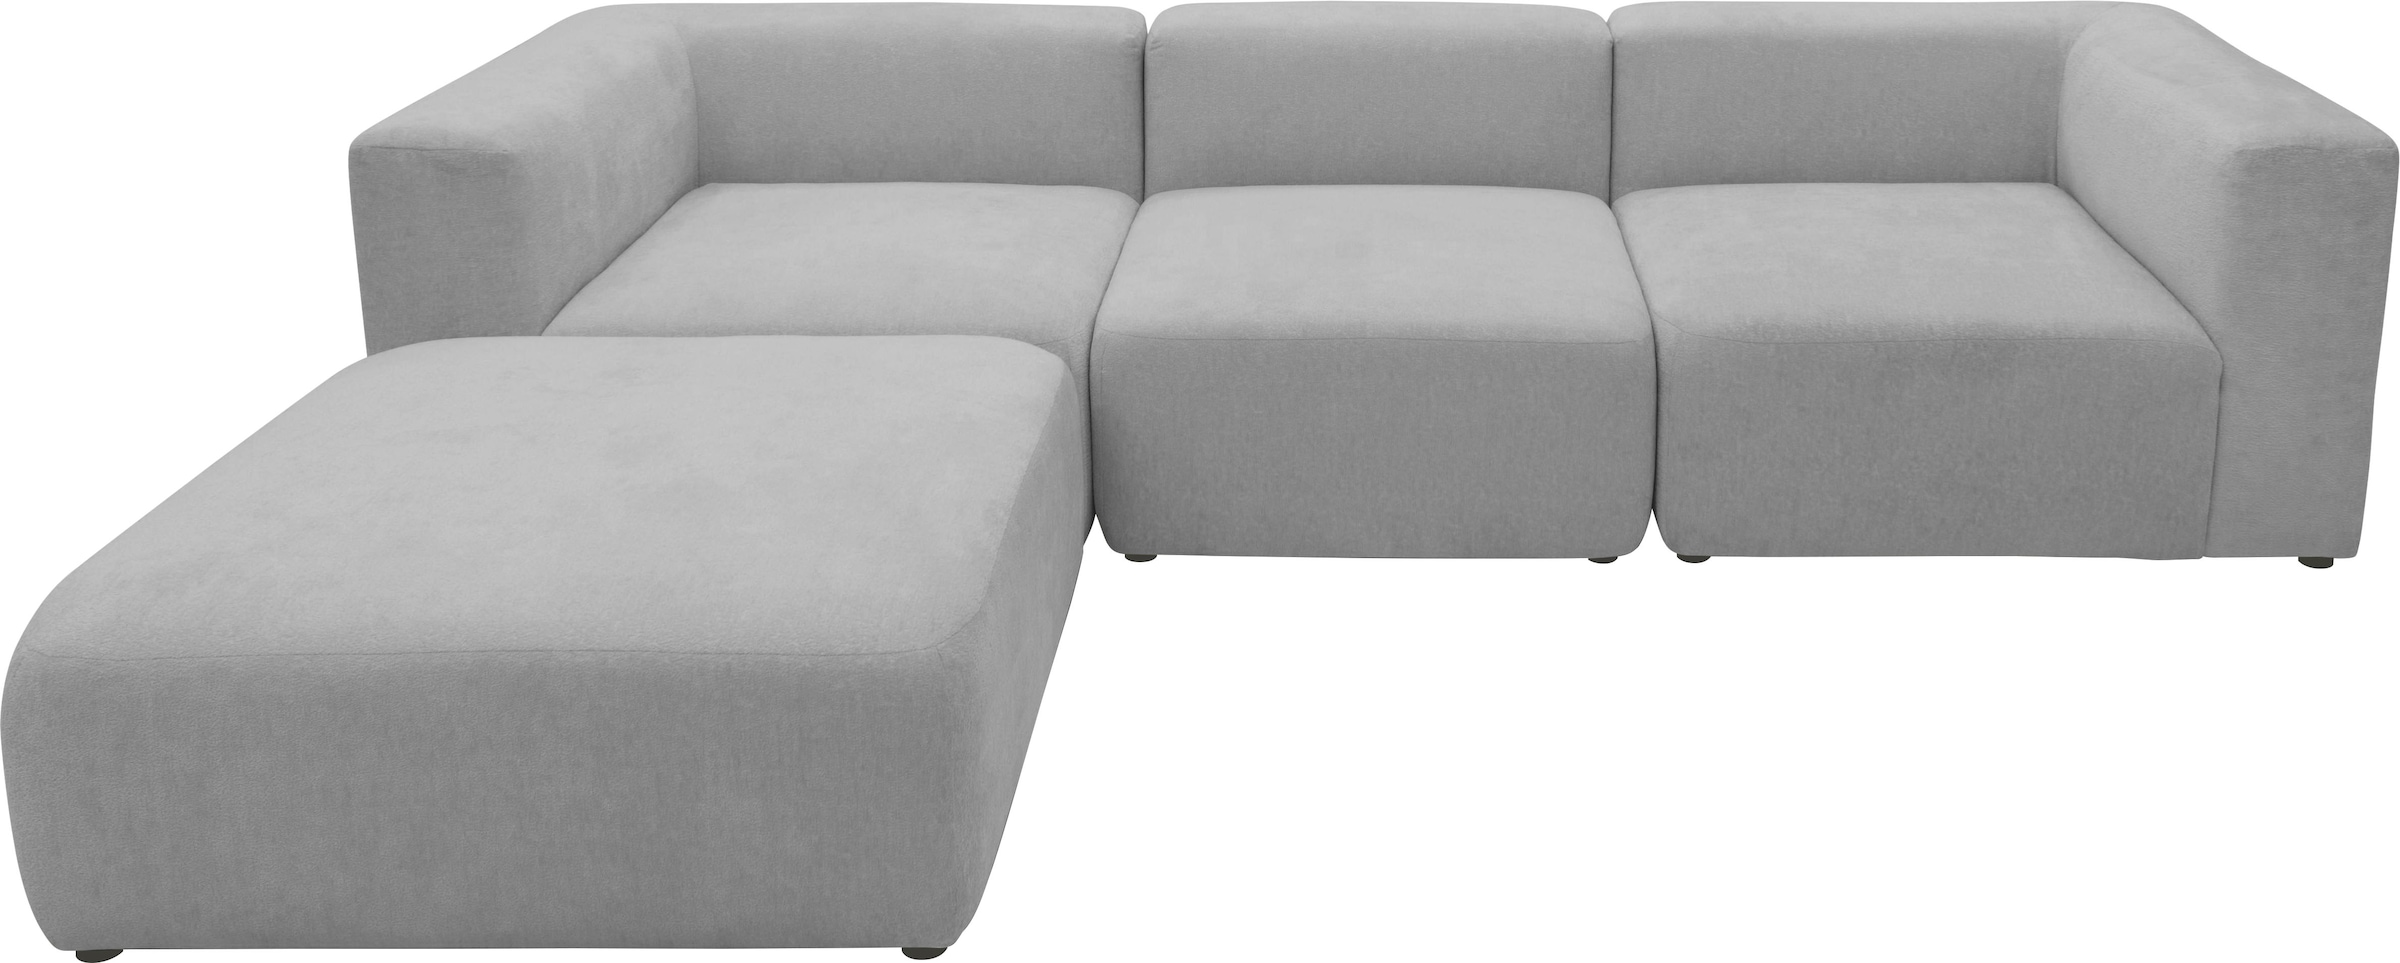 andas 3-Sitzer »Utvik kann individuell zusammengestellt werden«, Modulsofa, bestehend aus 2 Eck-, 1 Mittelelement und 1 Hocker